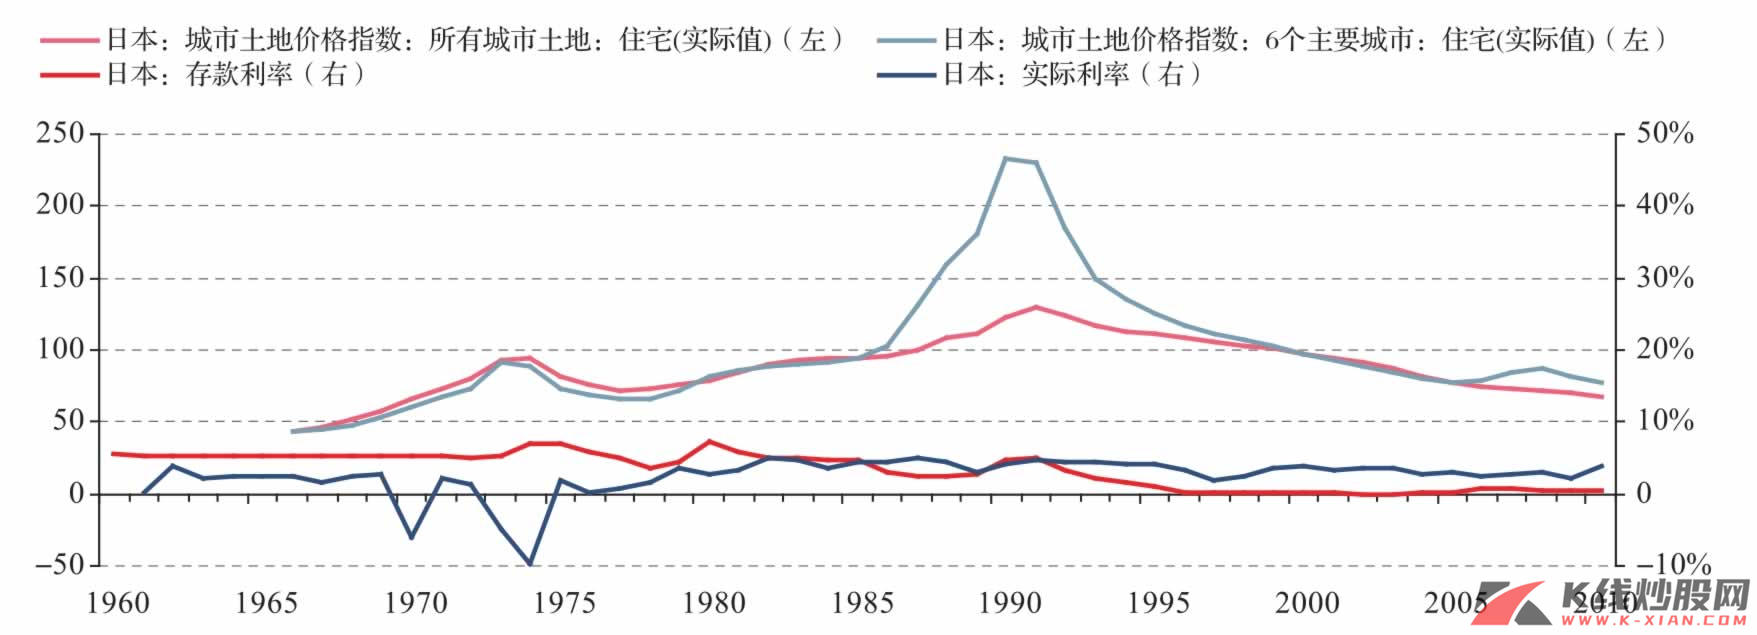 日本土地价格指数住宅指数和利率水平